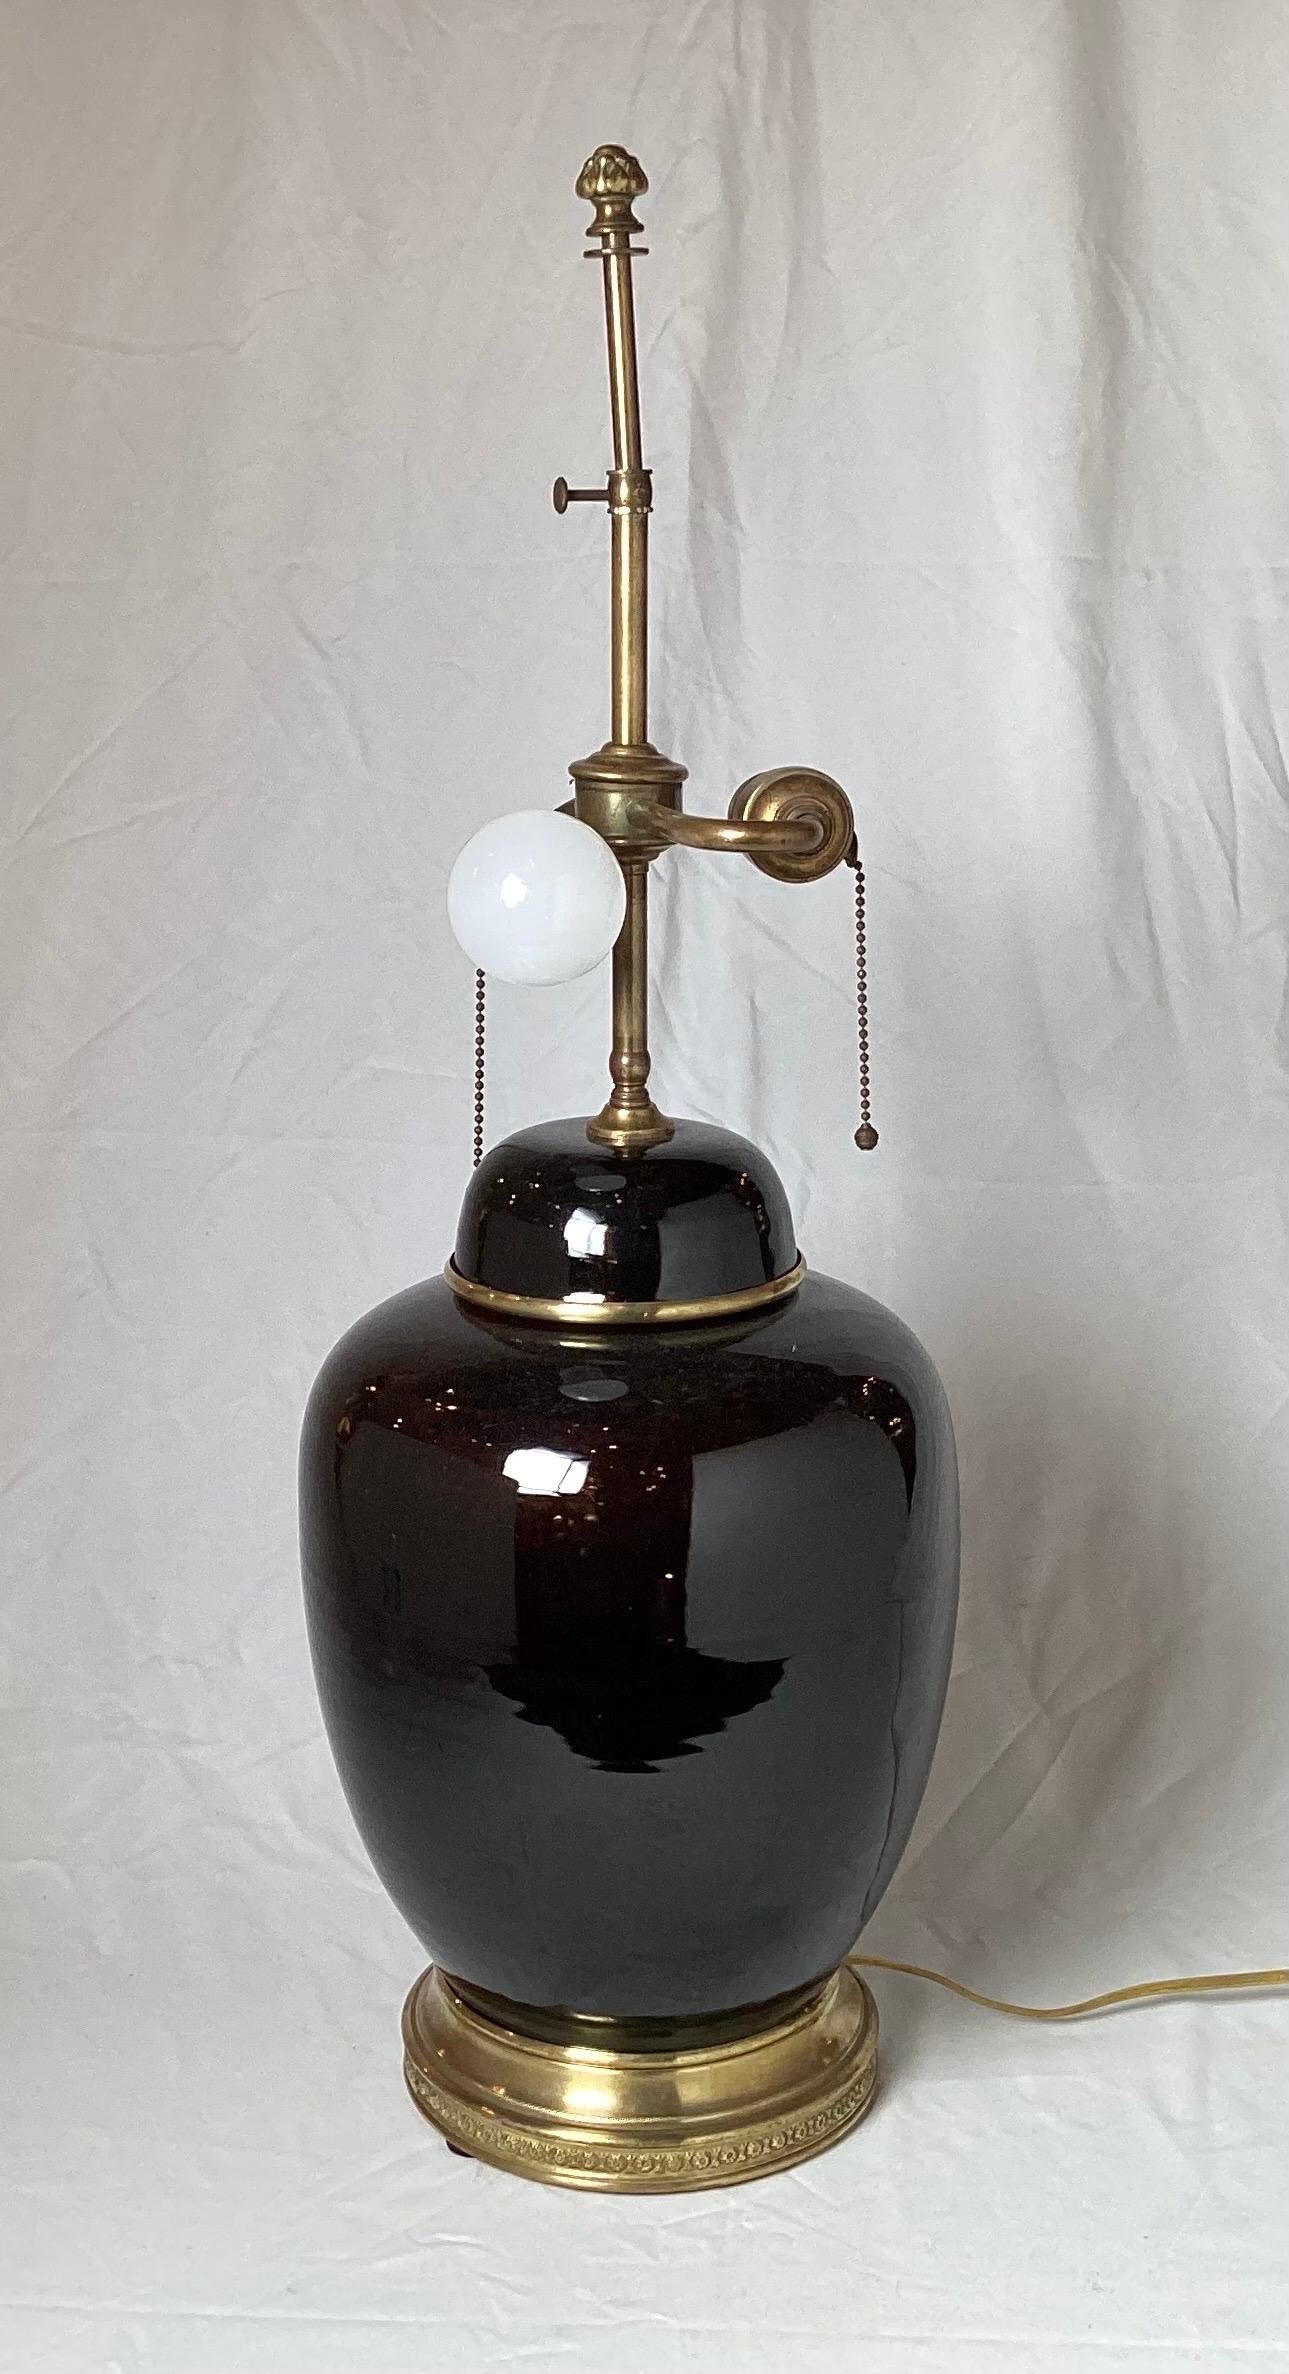 Une superbe jarre ancienne en porcelaine chinoise du 19ème siècle, en guise de lampe. La lampe mesure 27 pouces jusqu'au sommet de l'abat-jour, le pot en porcelaine mesure 9,5 pouces de diamètre, et 8 pouces de diamètre à la base. La couleur noire